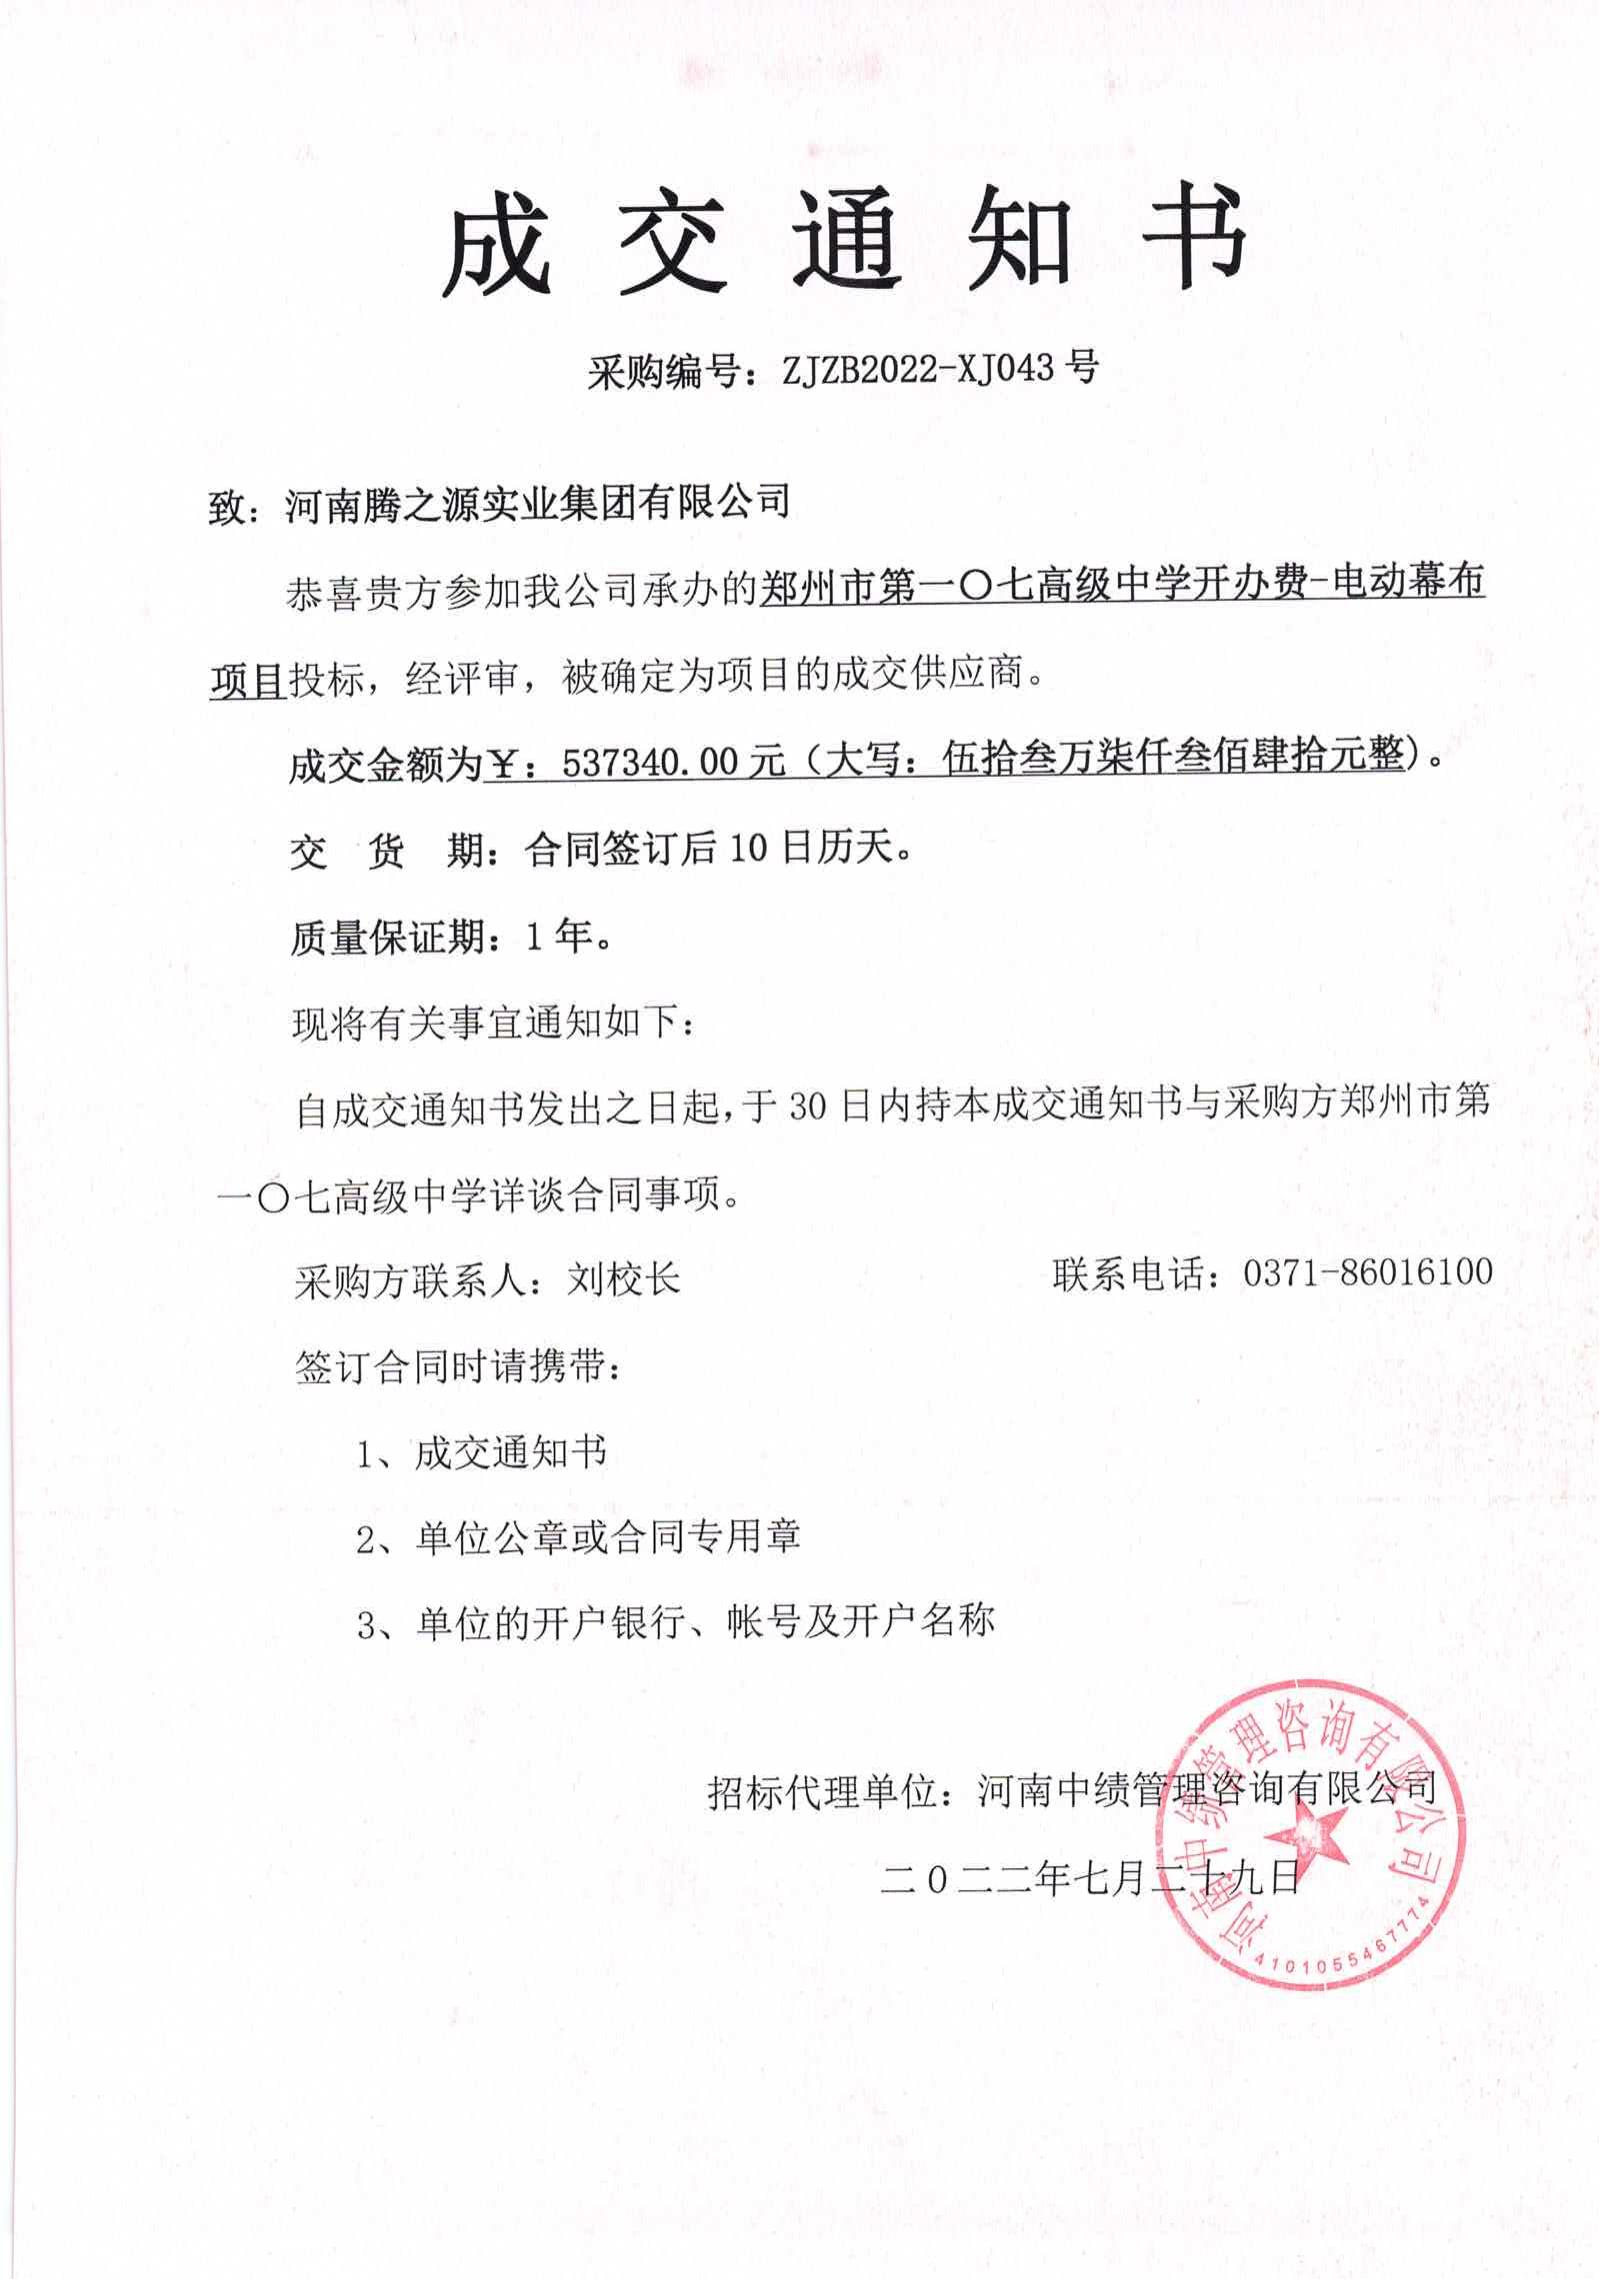 郑州市第一〇七高级中学开办费—电动幕布项目的中标公告